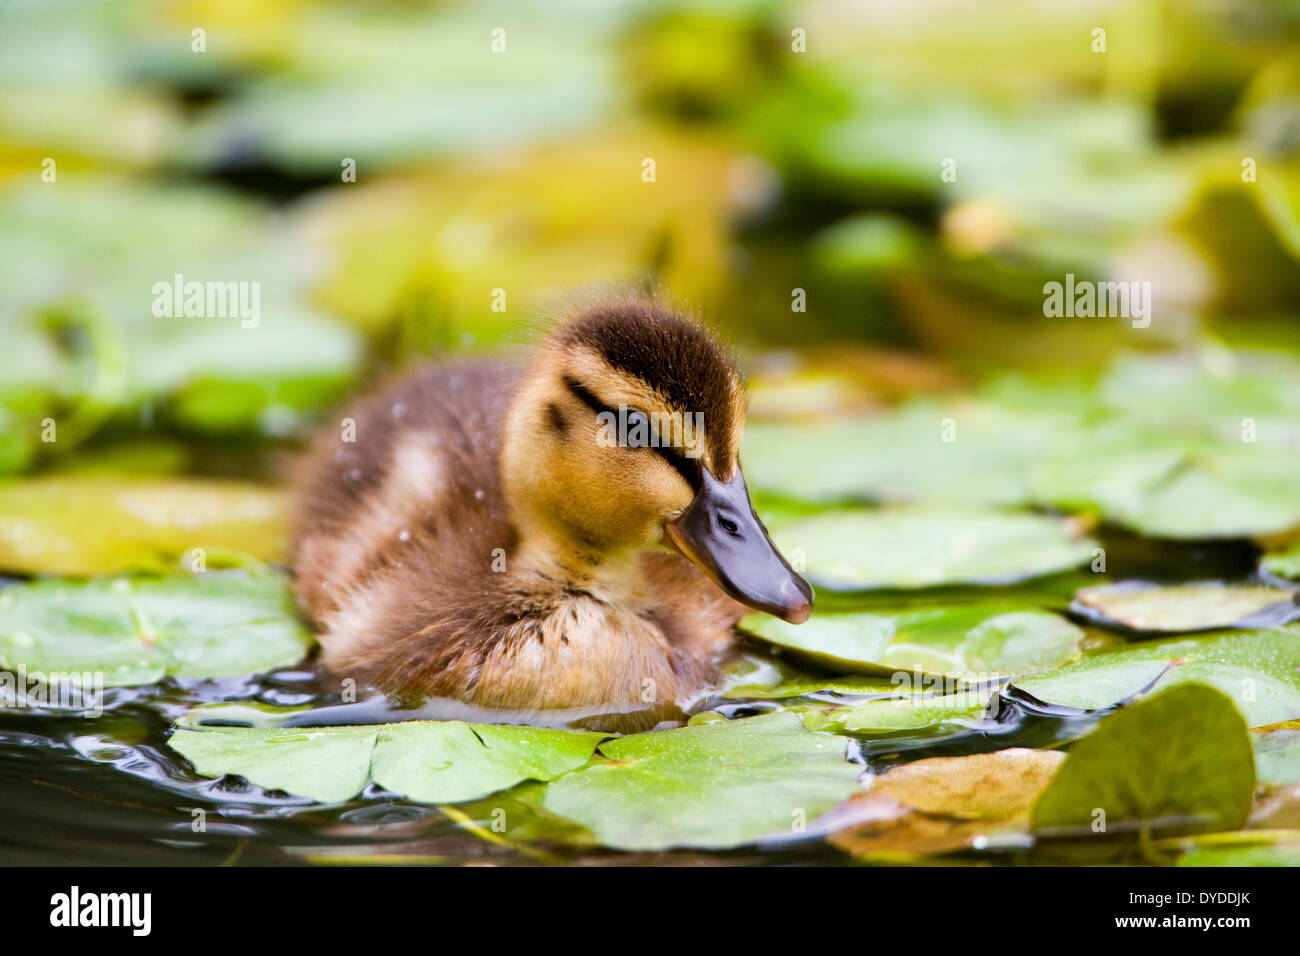 A Mallard duckling swimming among lily pads. Stock Photo